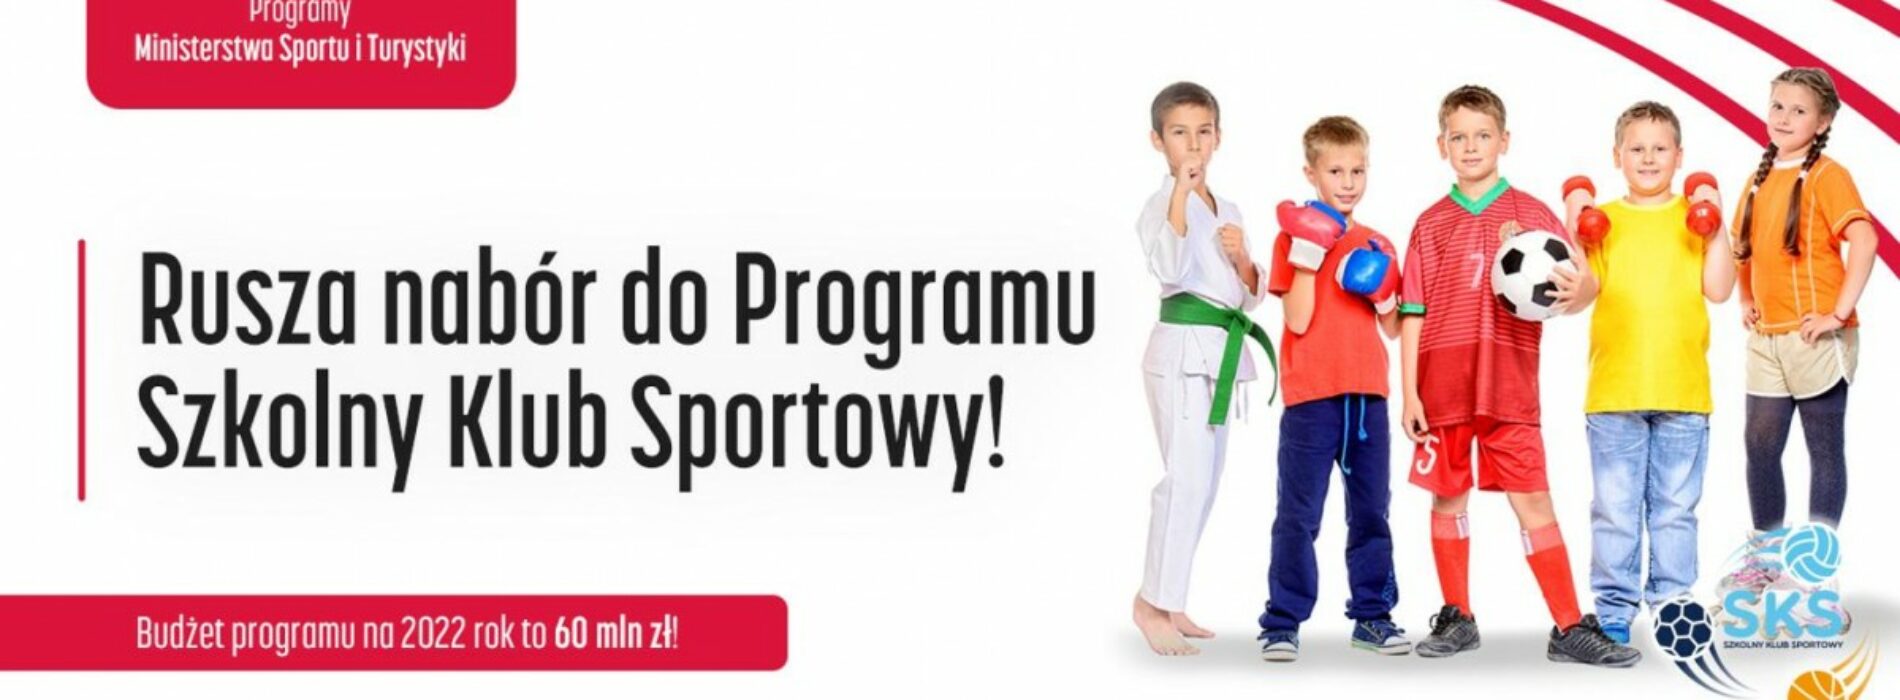 Ruszył nabór wniosków do Programu Szkolny Klub Sportowy! W budżecie aż 60 mln zł